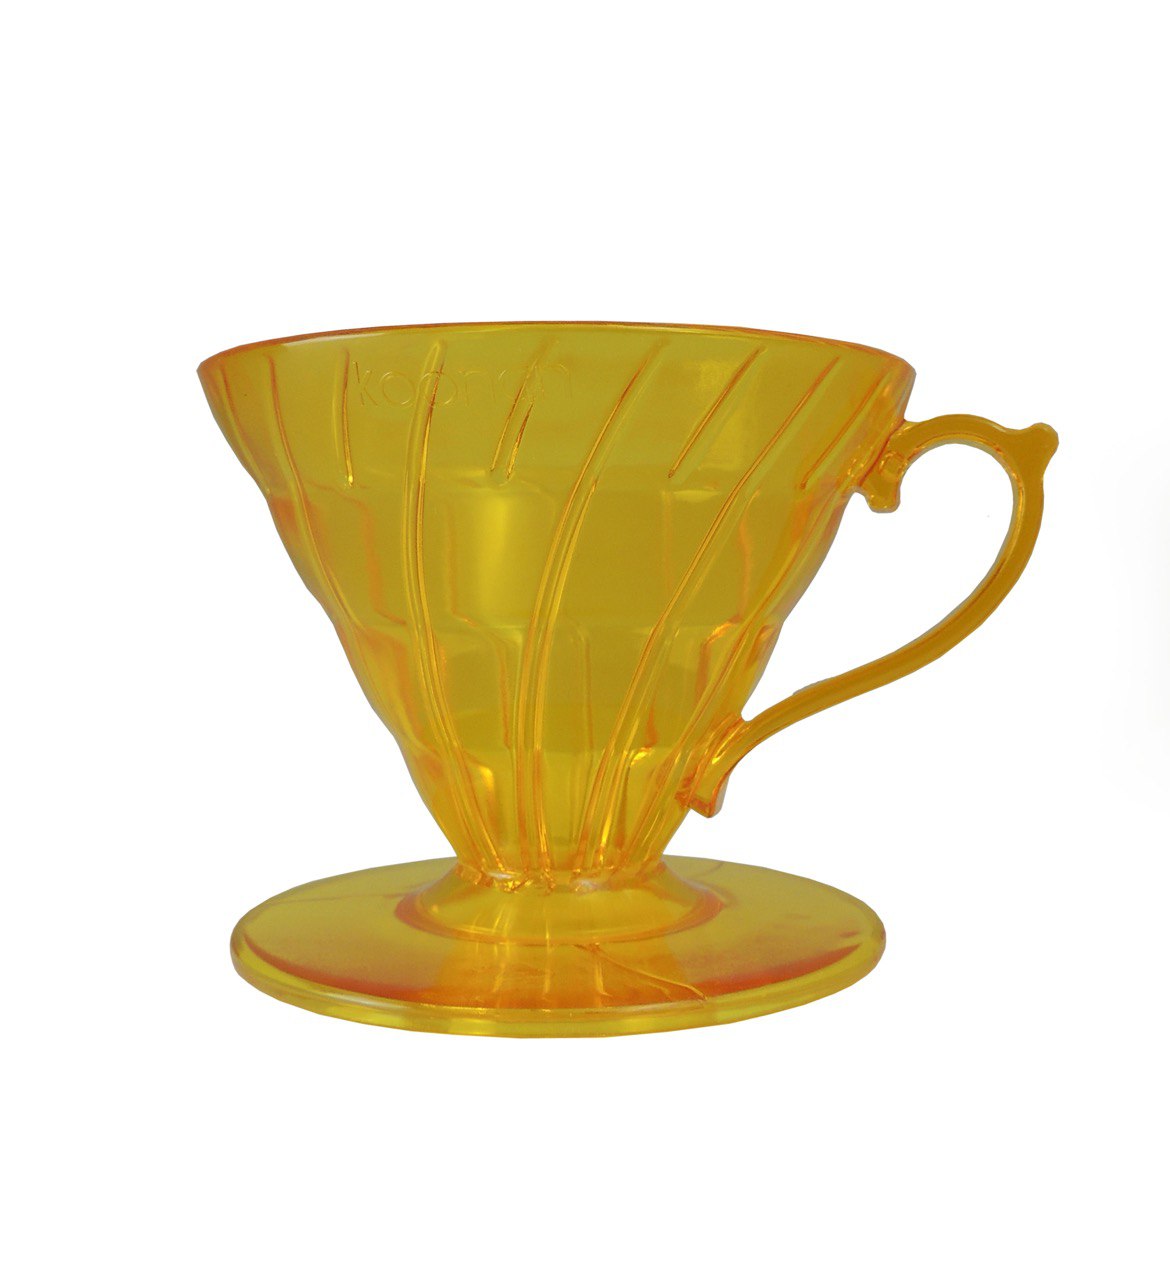 Ябодр-VD-02-Y. Воронка пластиковая желтая 02 размера. 1-4 чашки